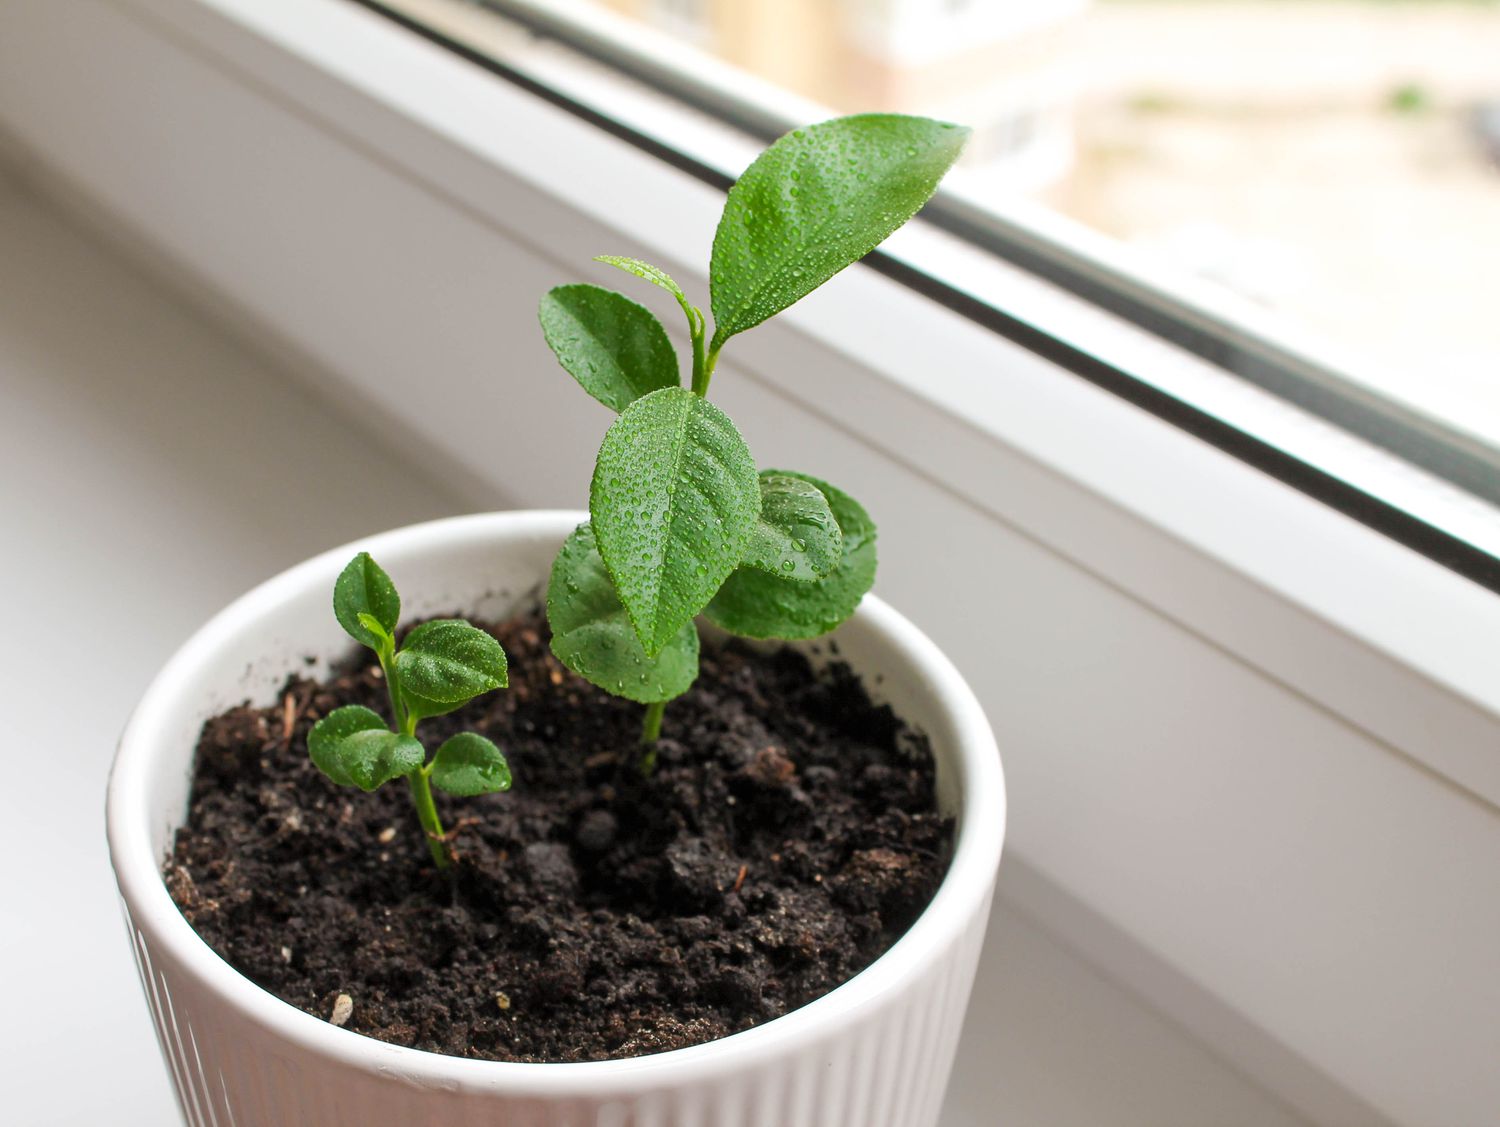 5 Easy Tips for Lemon Tree Seedling Care